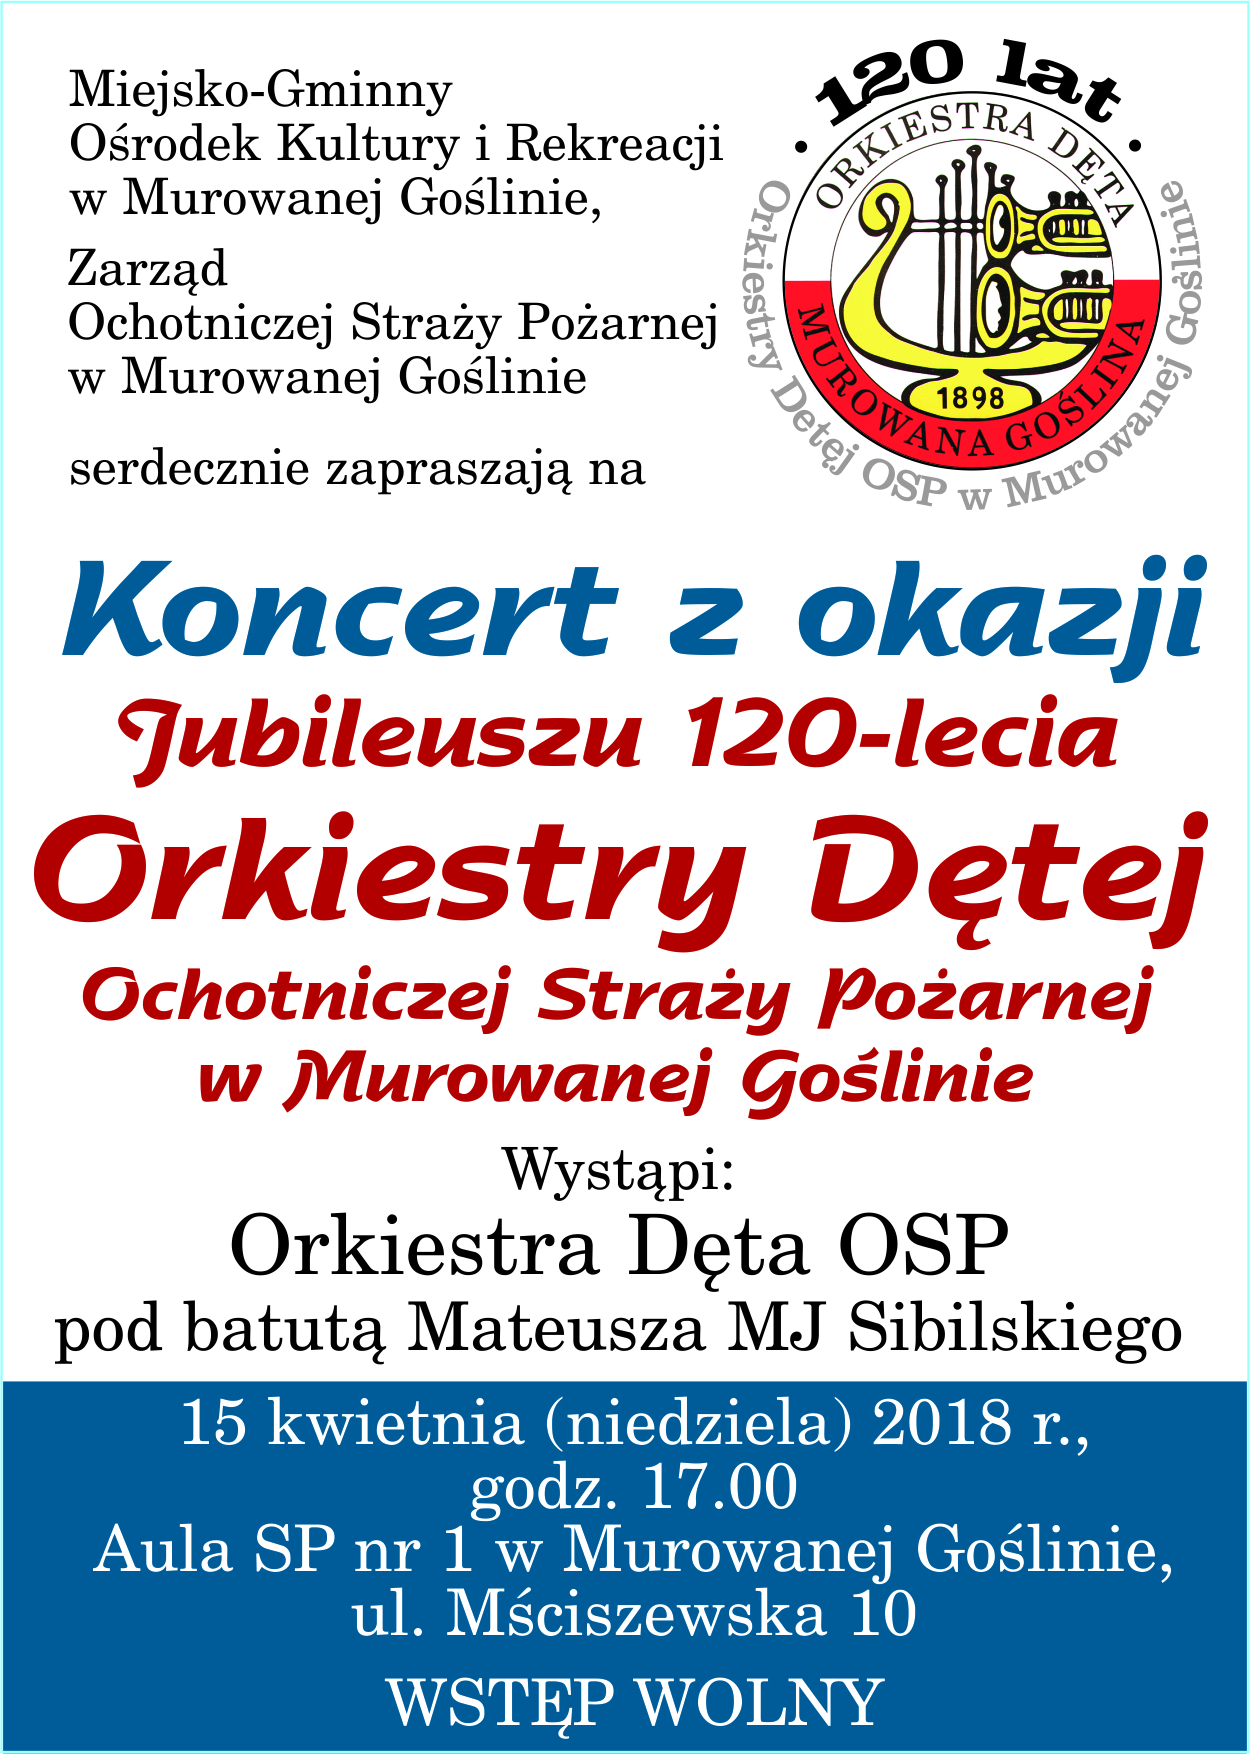 Koncert z okazji jubileuszu 120-lecia Orkiestry Dętej w Murowanej Goślinie